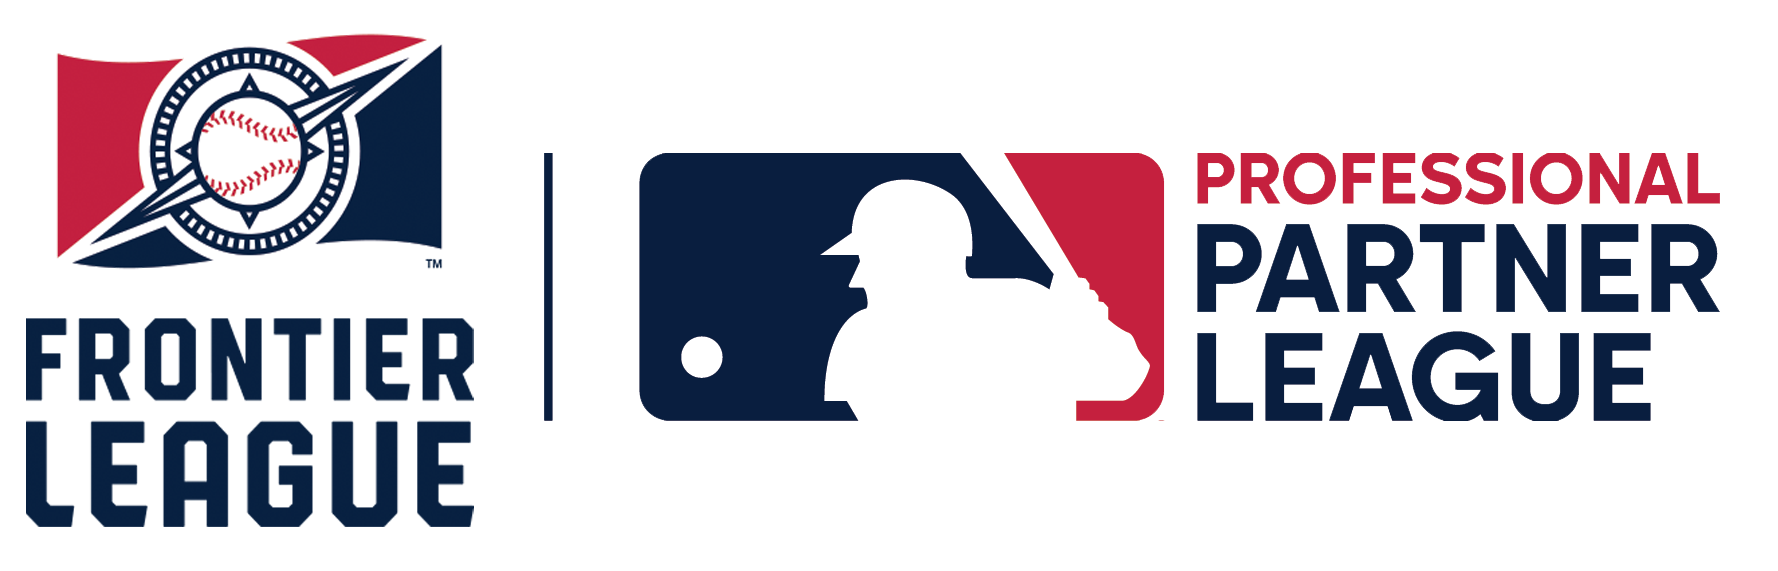 cubs minor league affiliates